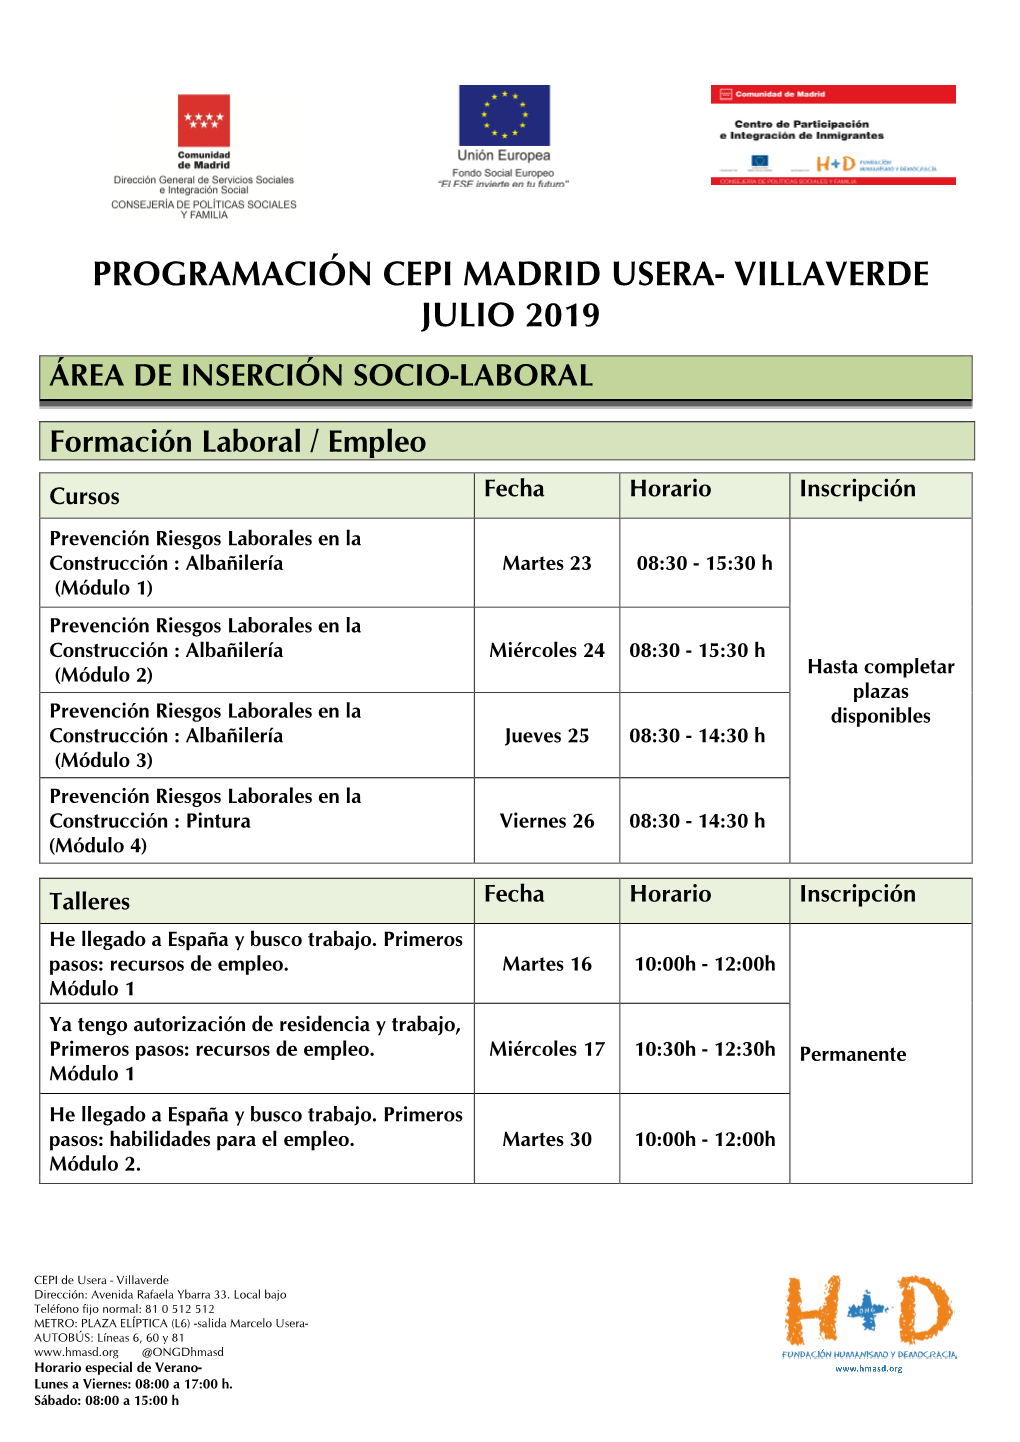 Programación Cepi Madrid Usera- Villaverde Julio 2019